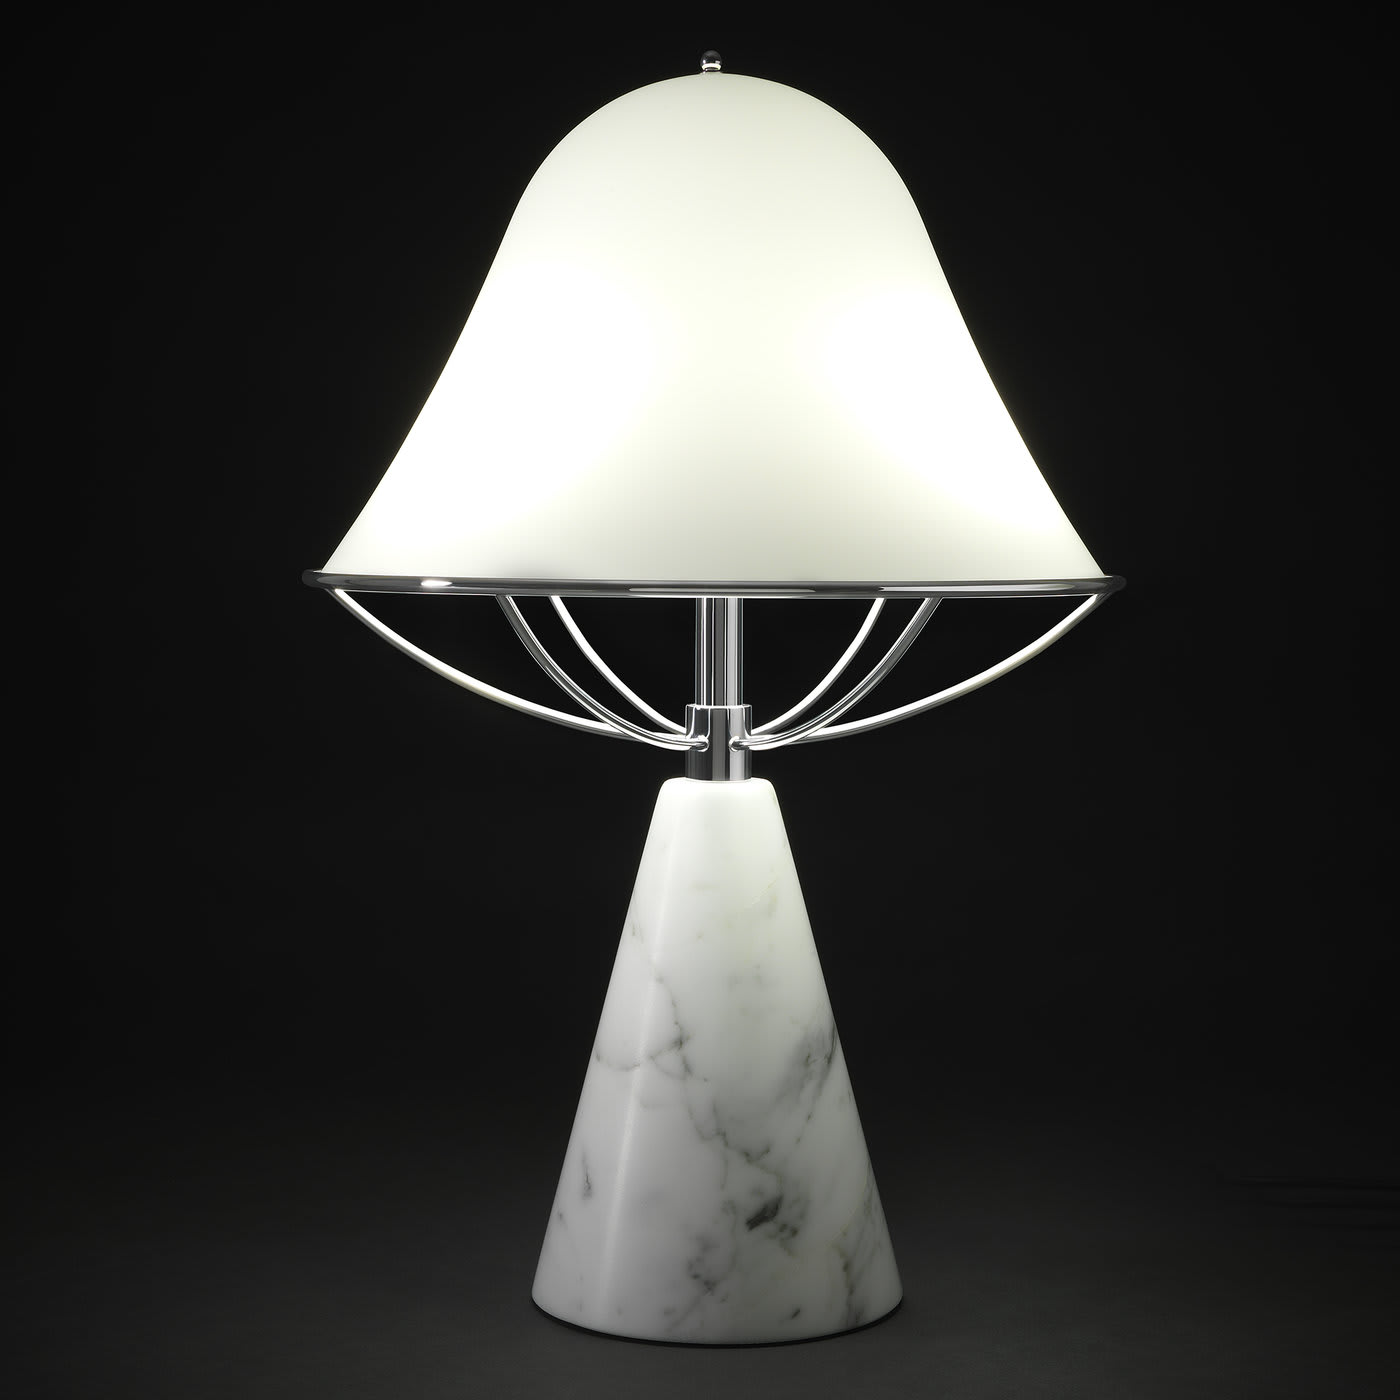 Anita Table Lamp in Carrara Marble by Lorenza Bozzoli - Tato